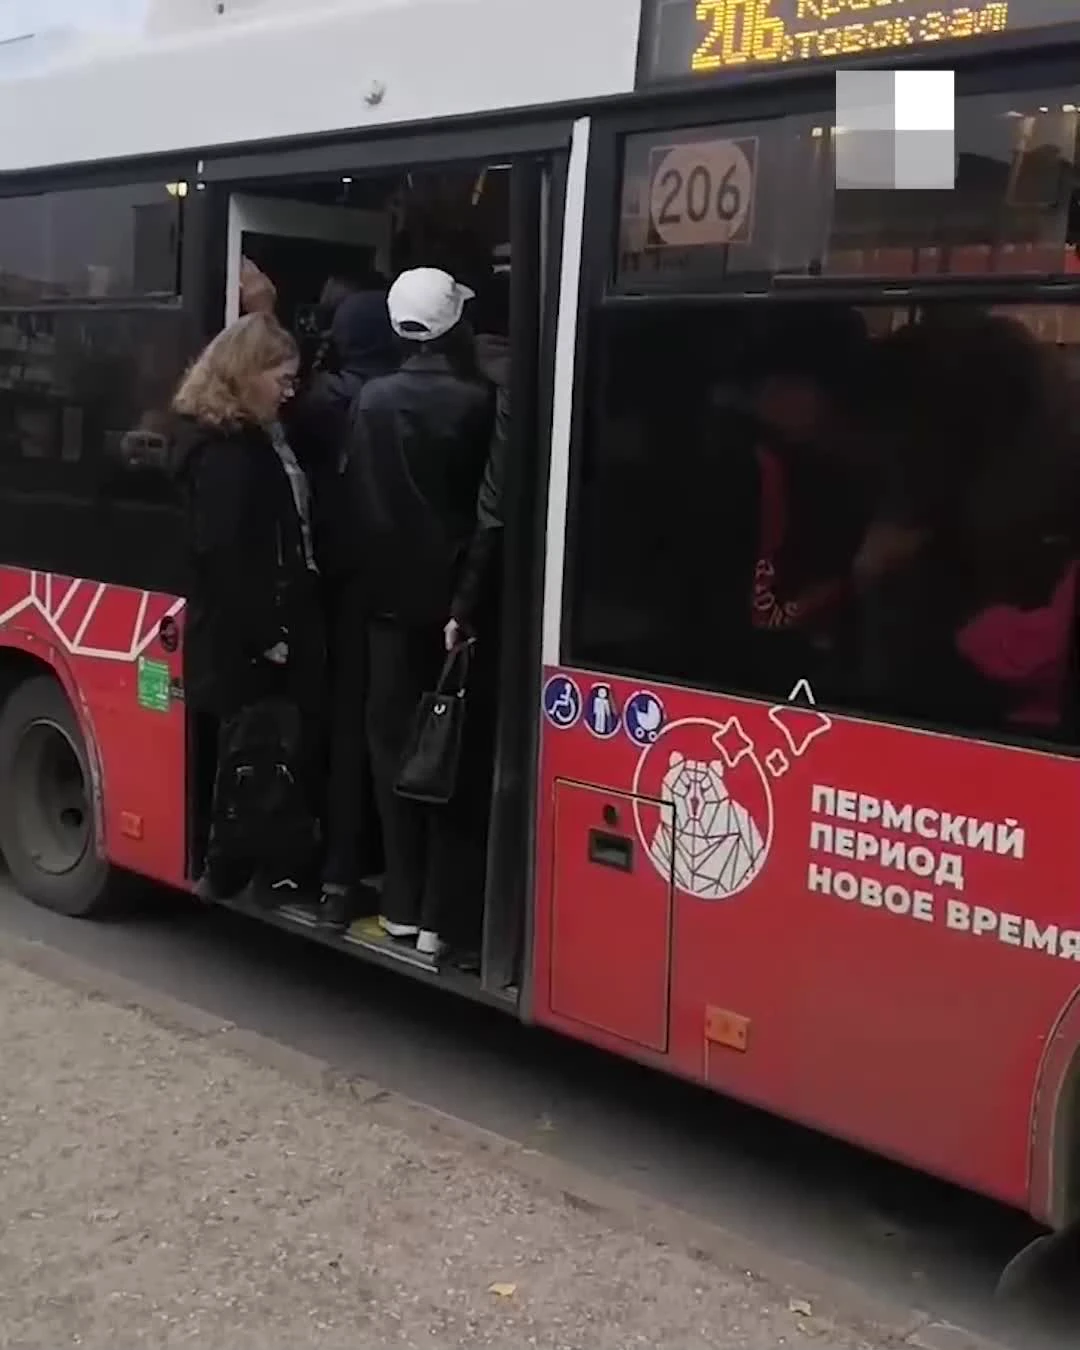 Давка в транспорте: почему опасно ездить в переполненном автобусе // Видео НТВ